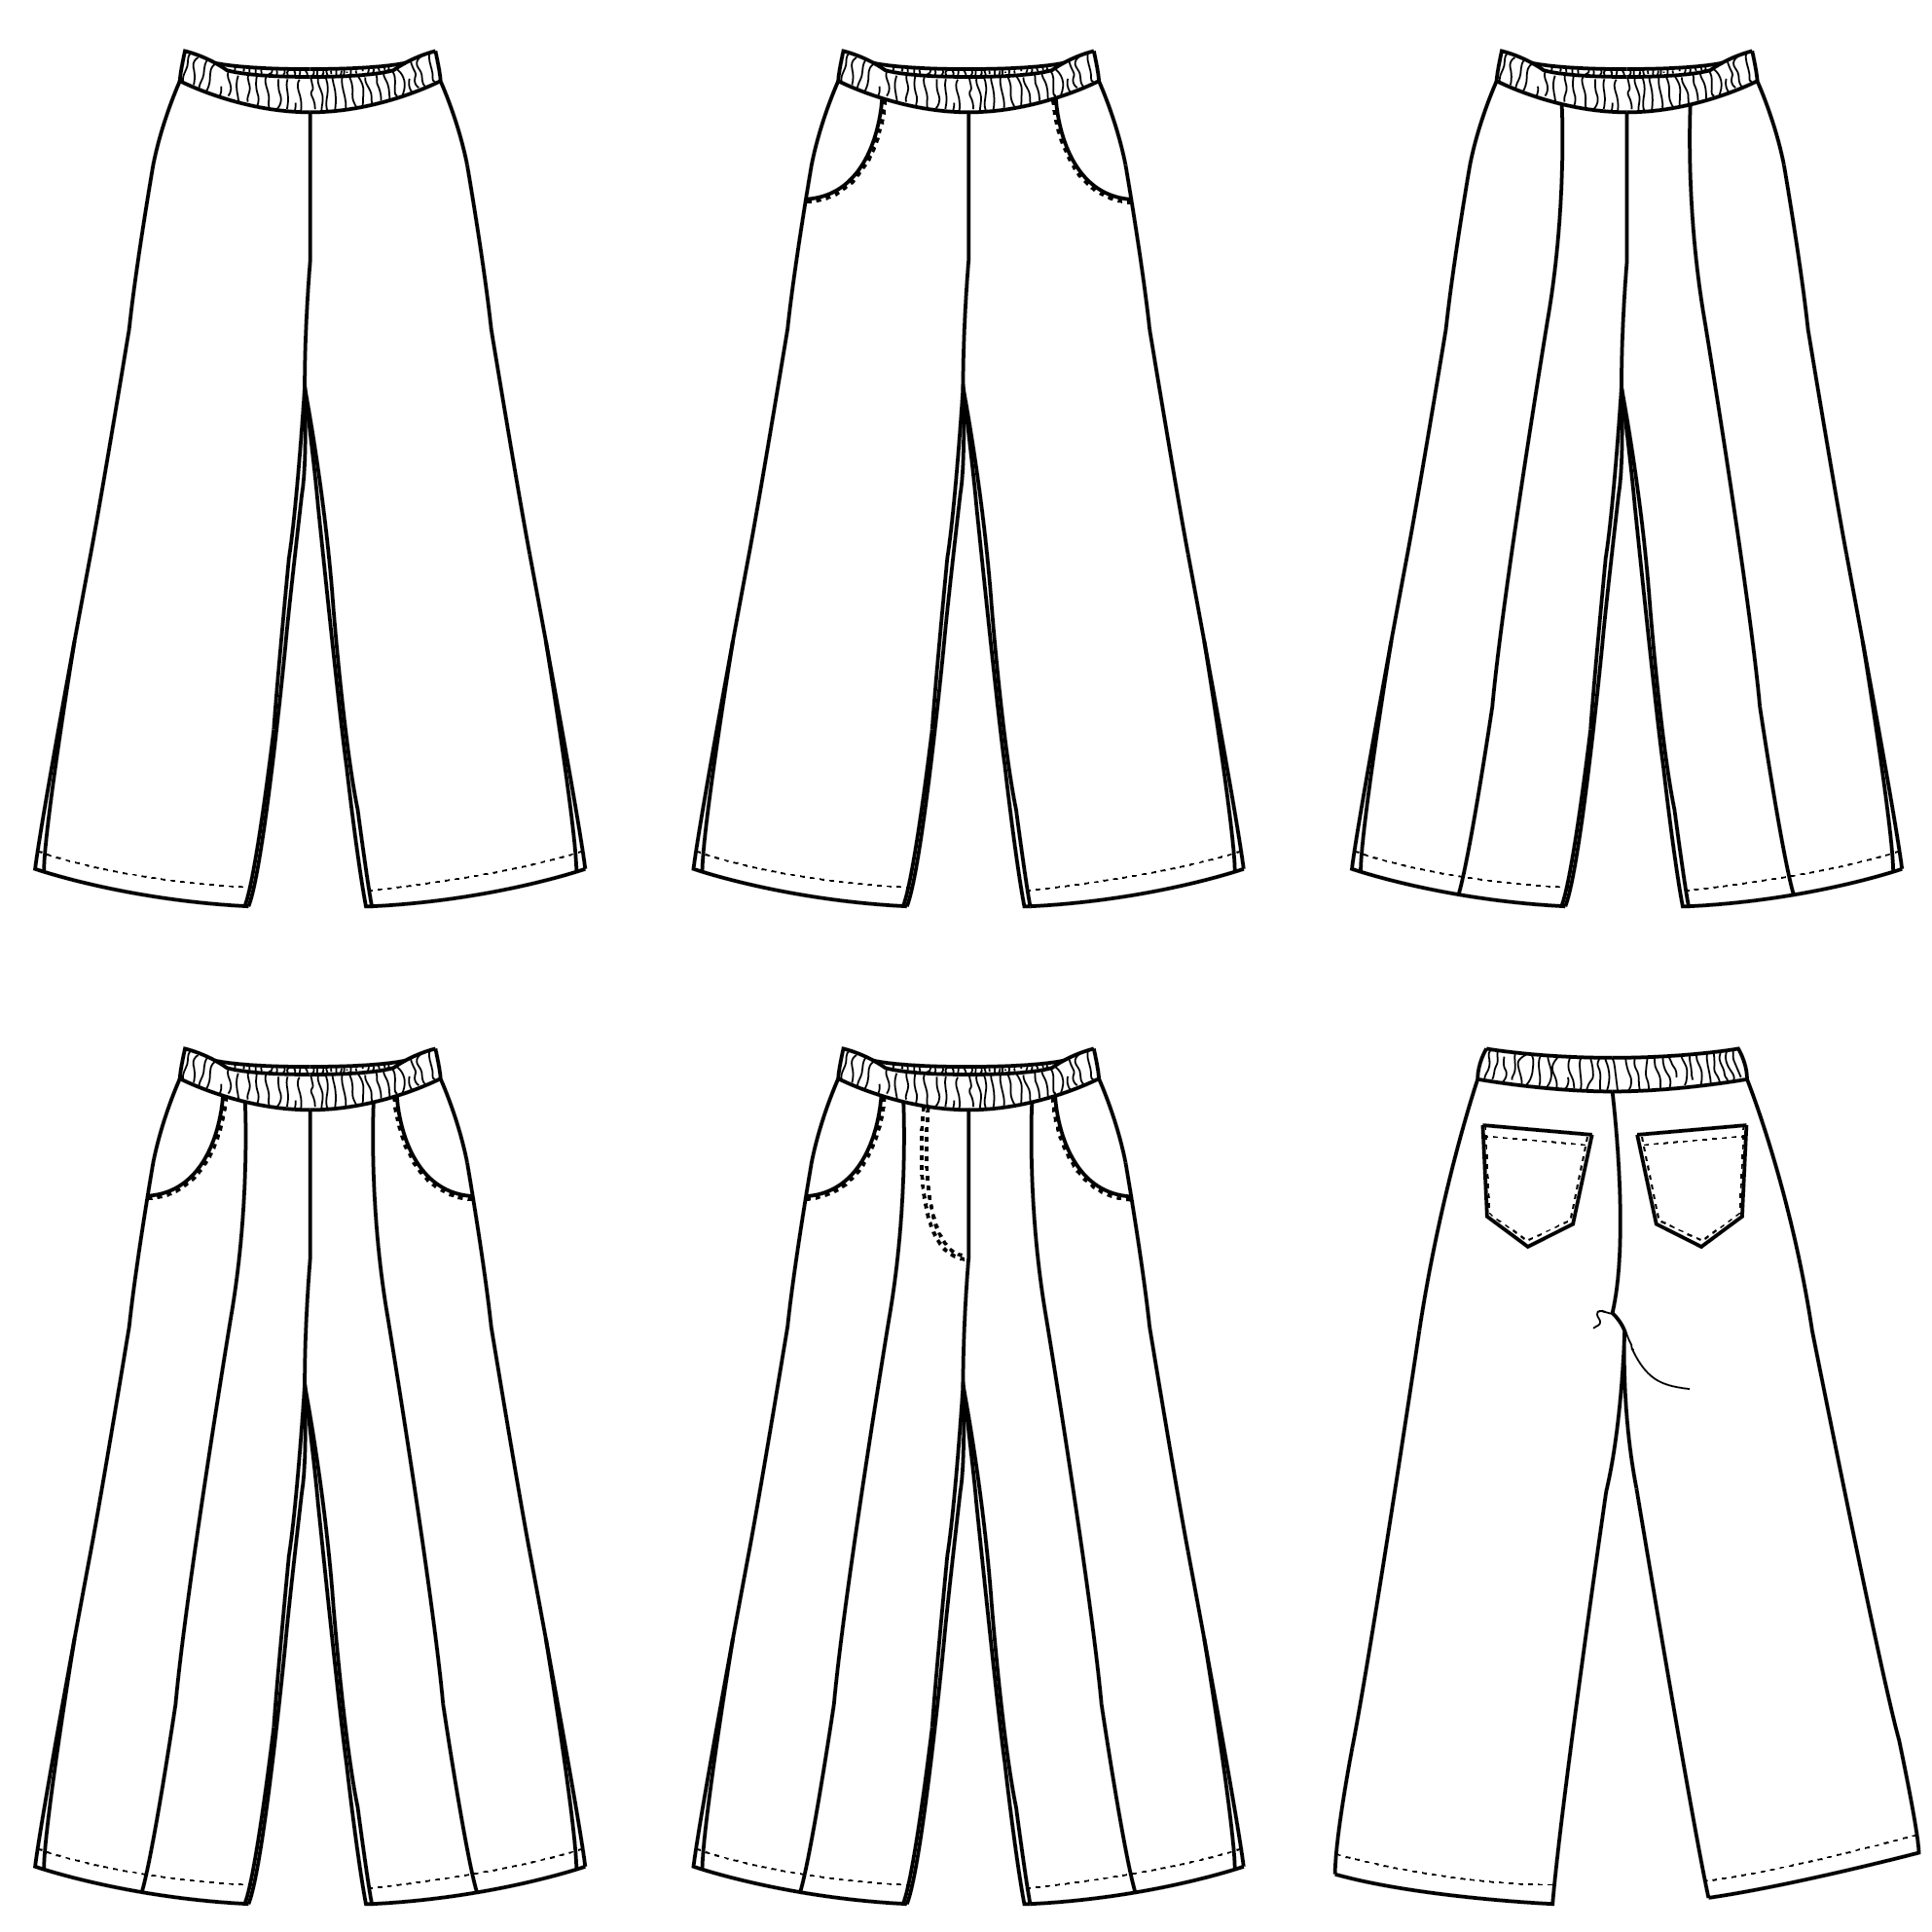 Bay pants pattern